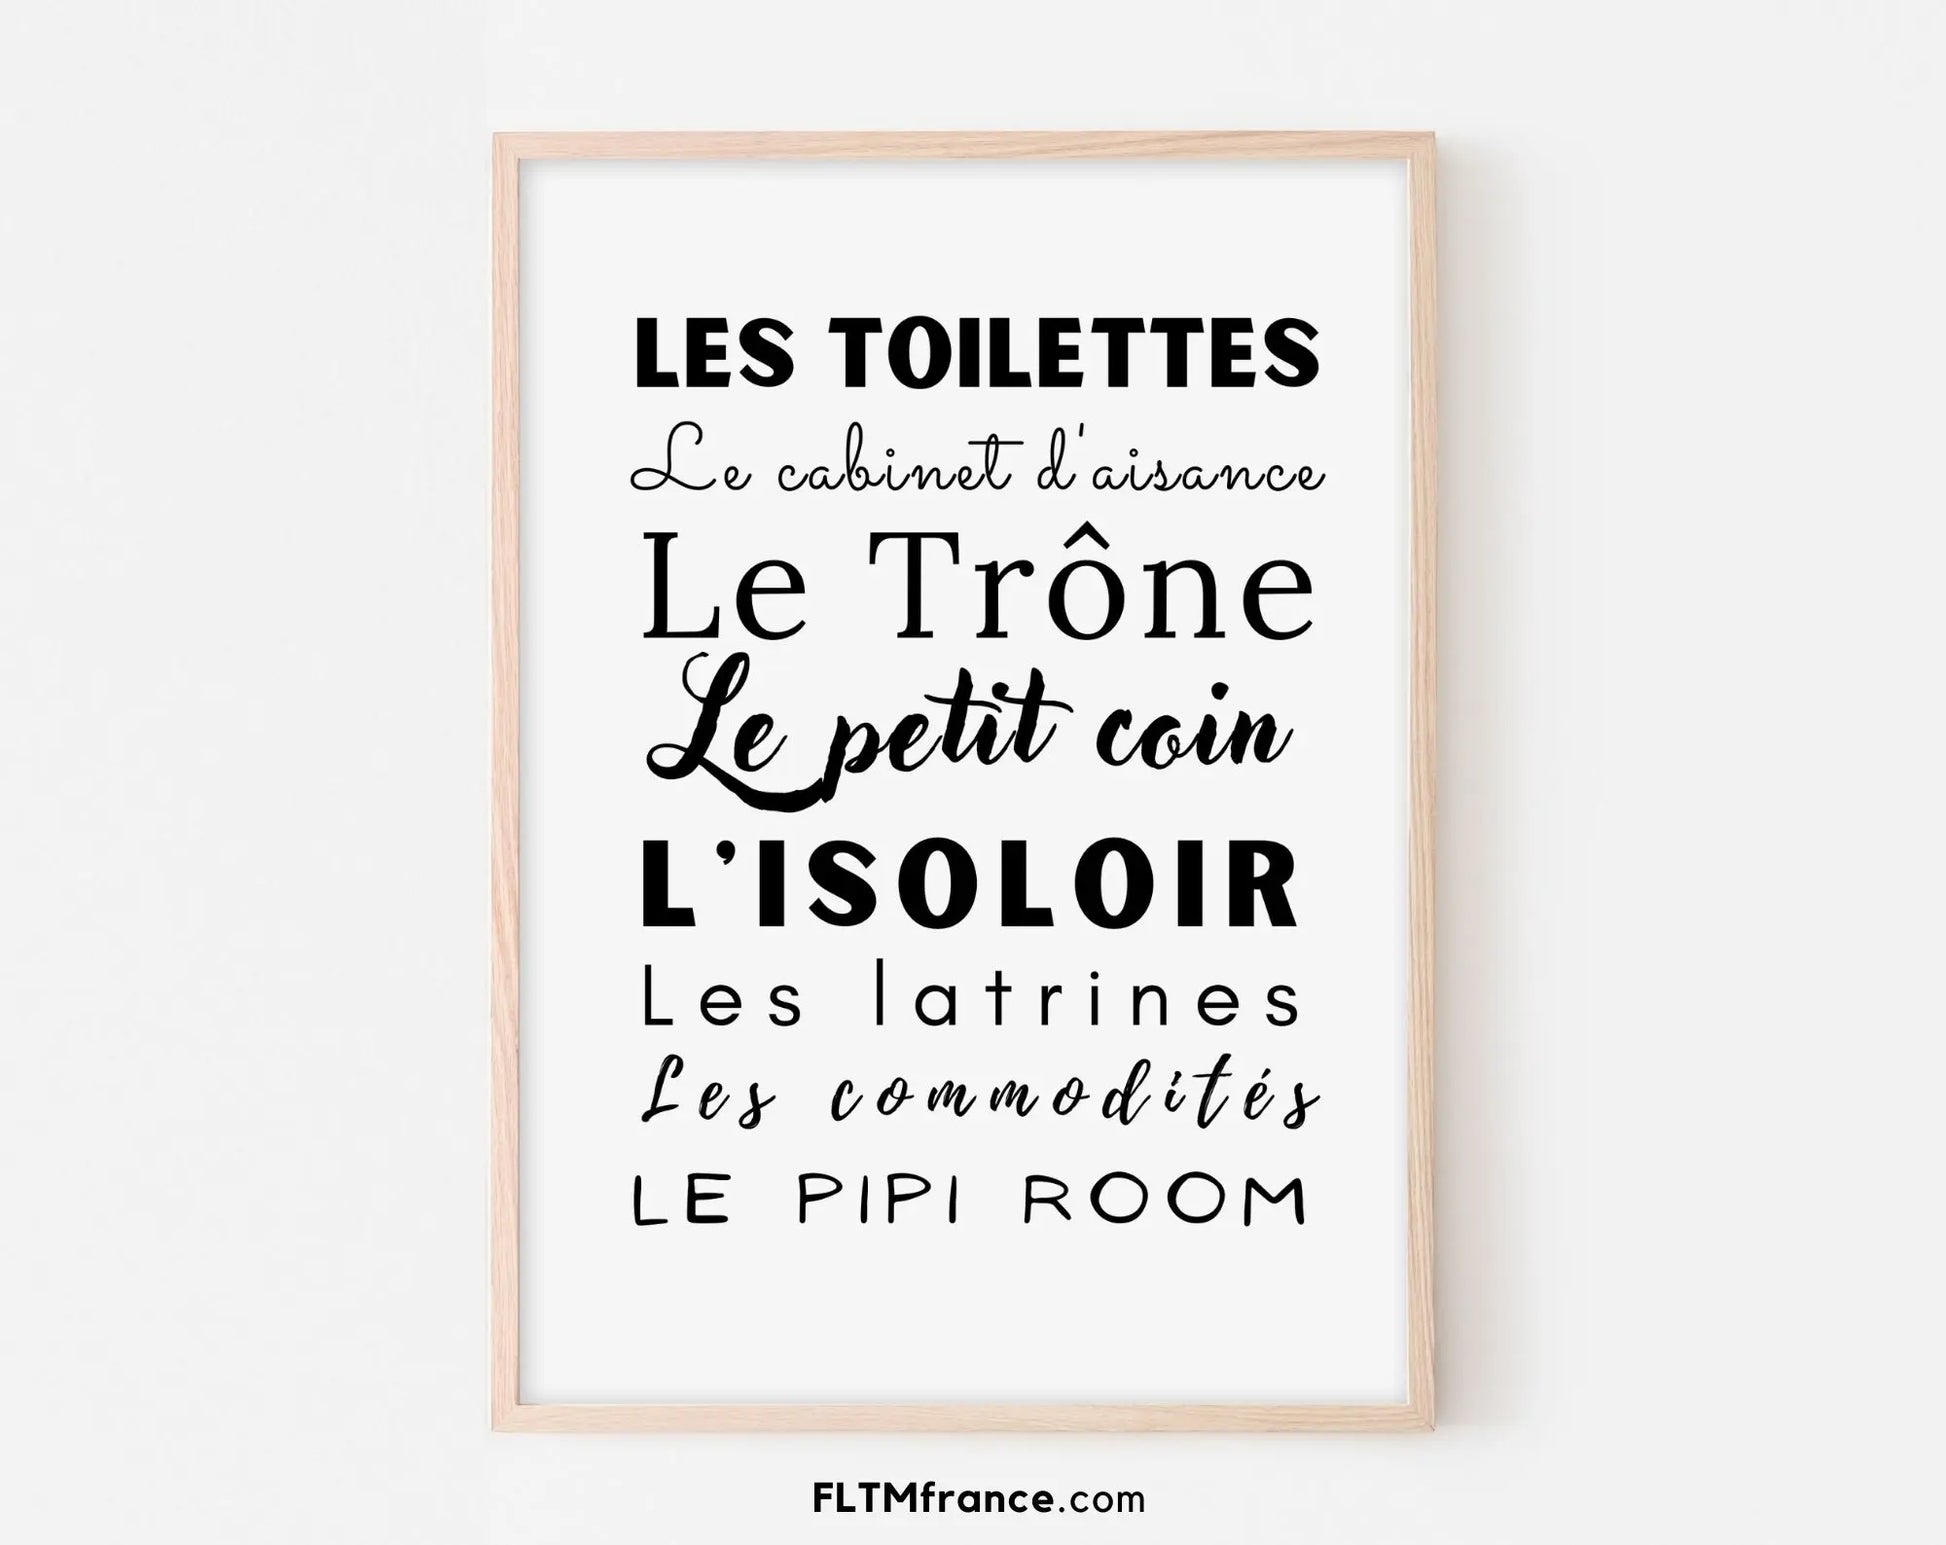 Affiche Les toilettes, le trône, le petit coin, le pipi room... - Poster minimaliste WC FLTMfrance